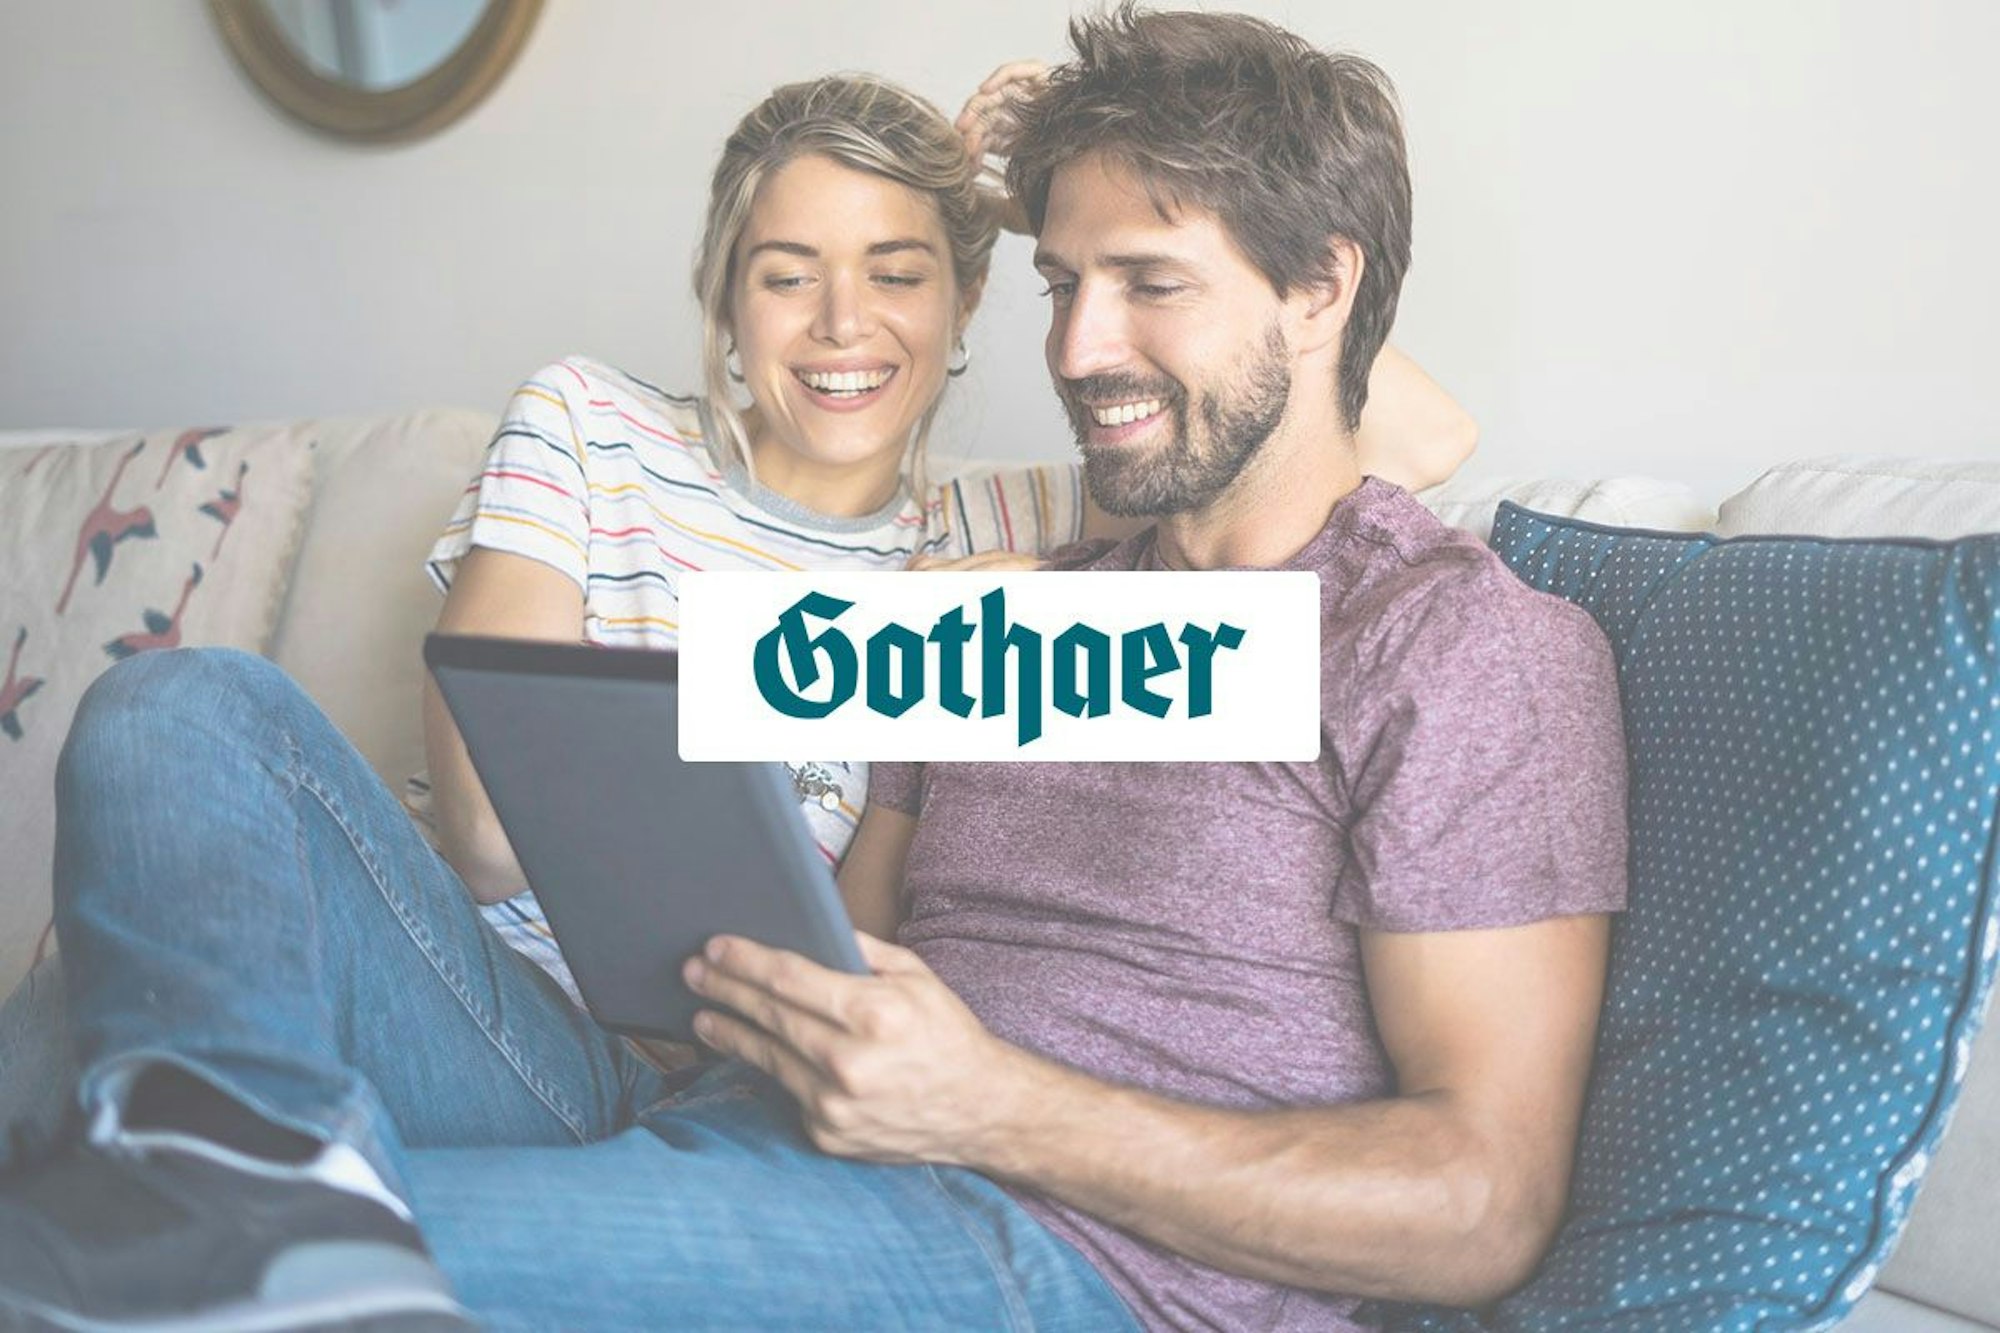 Mann und Frau sitzen auf Couch und schauen lächelnd auf ein Tablet. Logo der Gothaer Versicherung im Vordergrund.